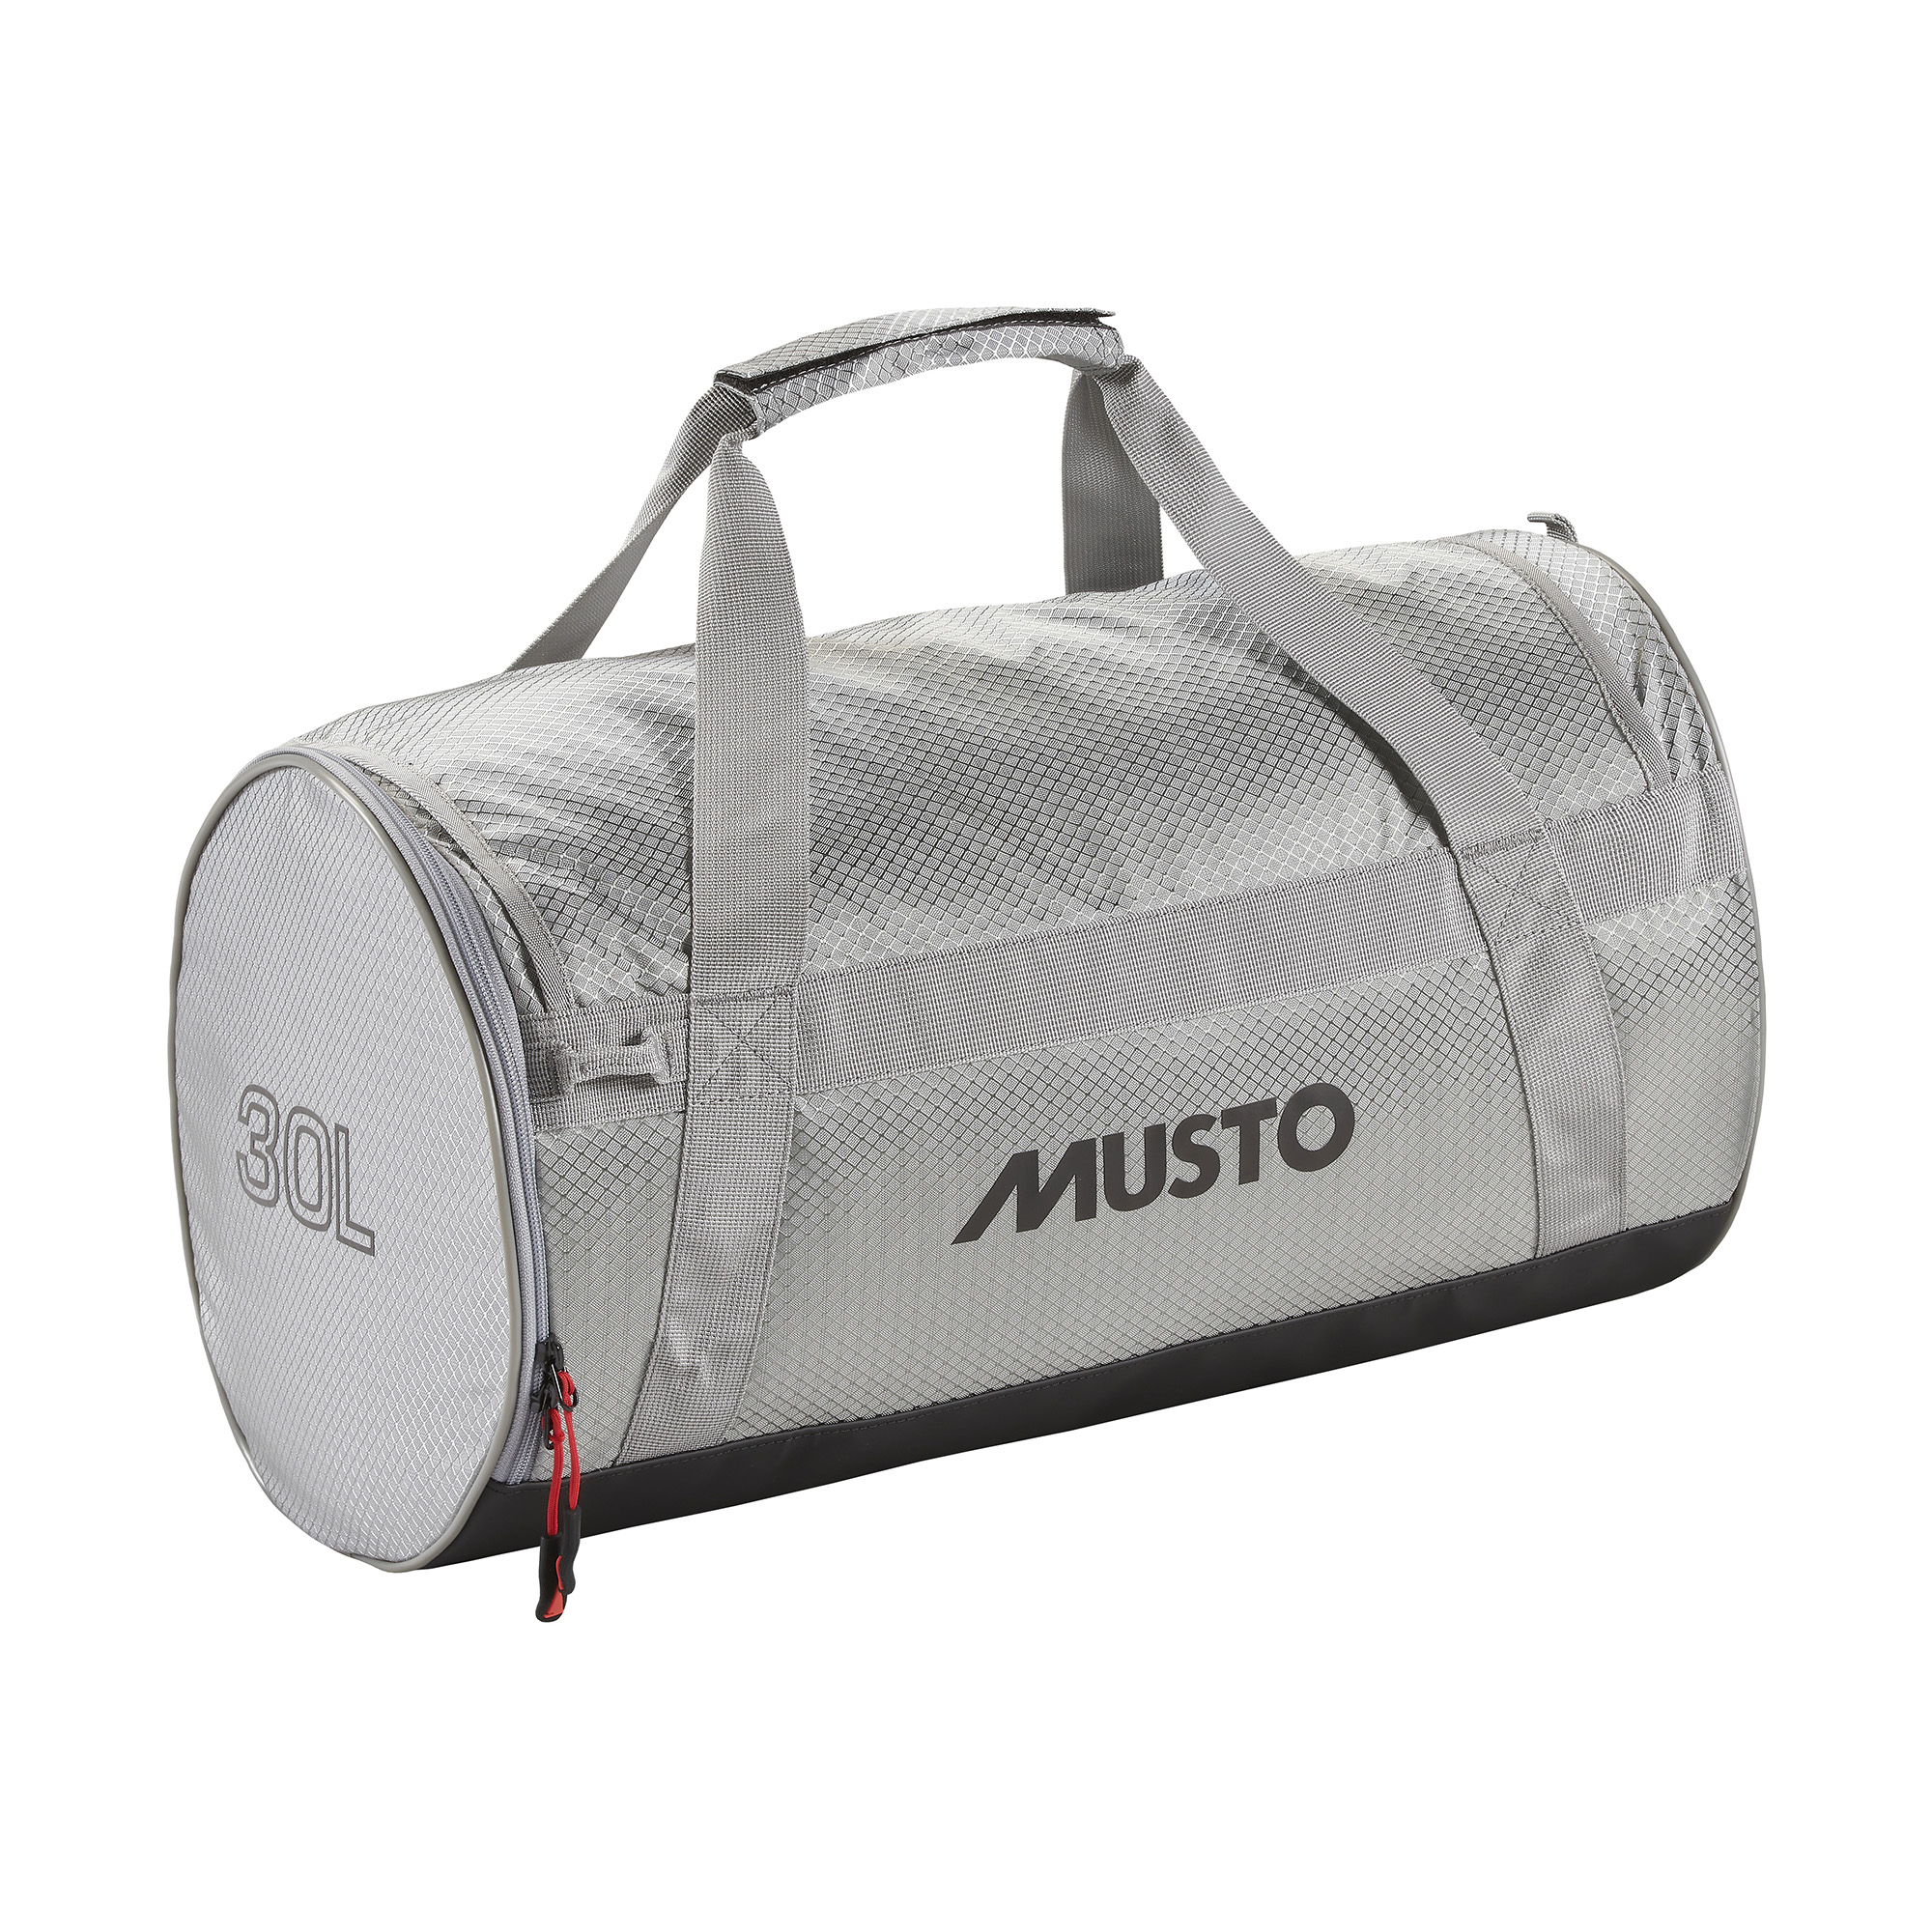 Musto Duffel Bag 30 Liter platinum